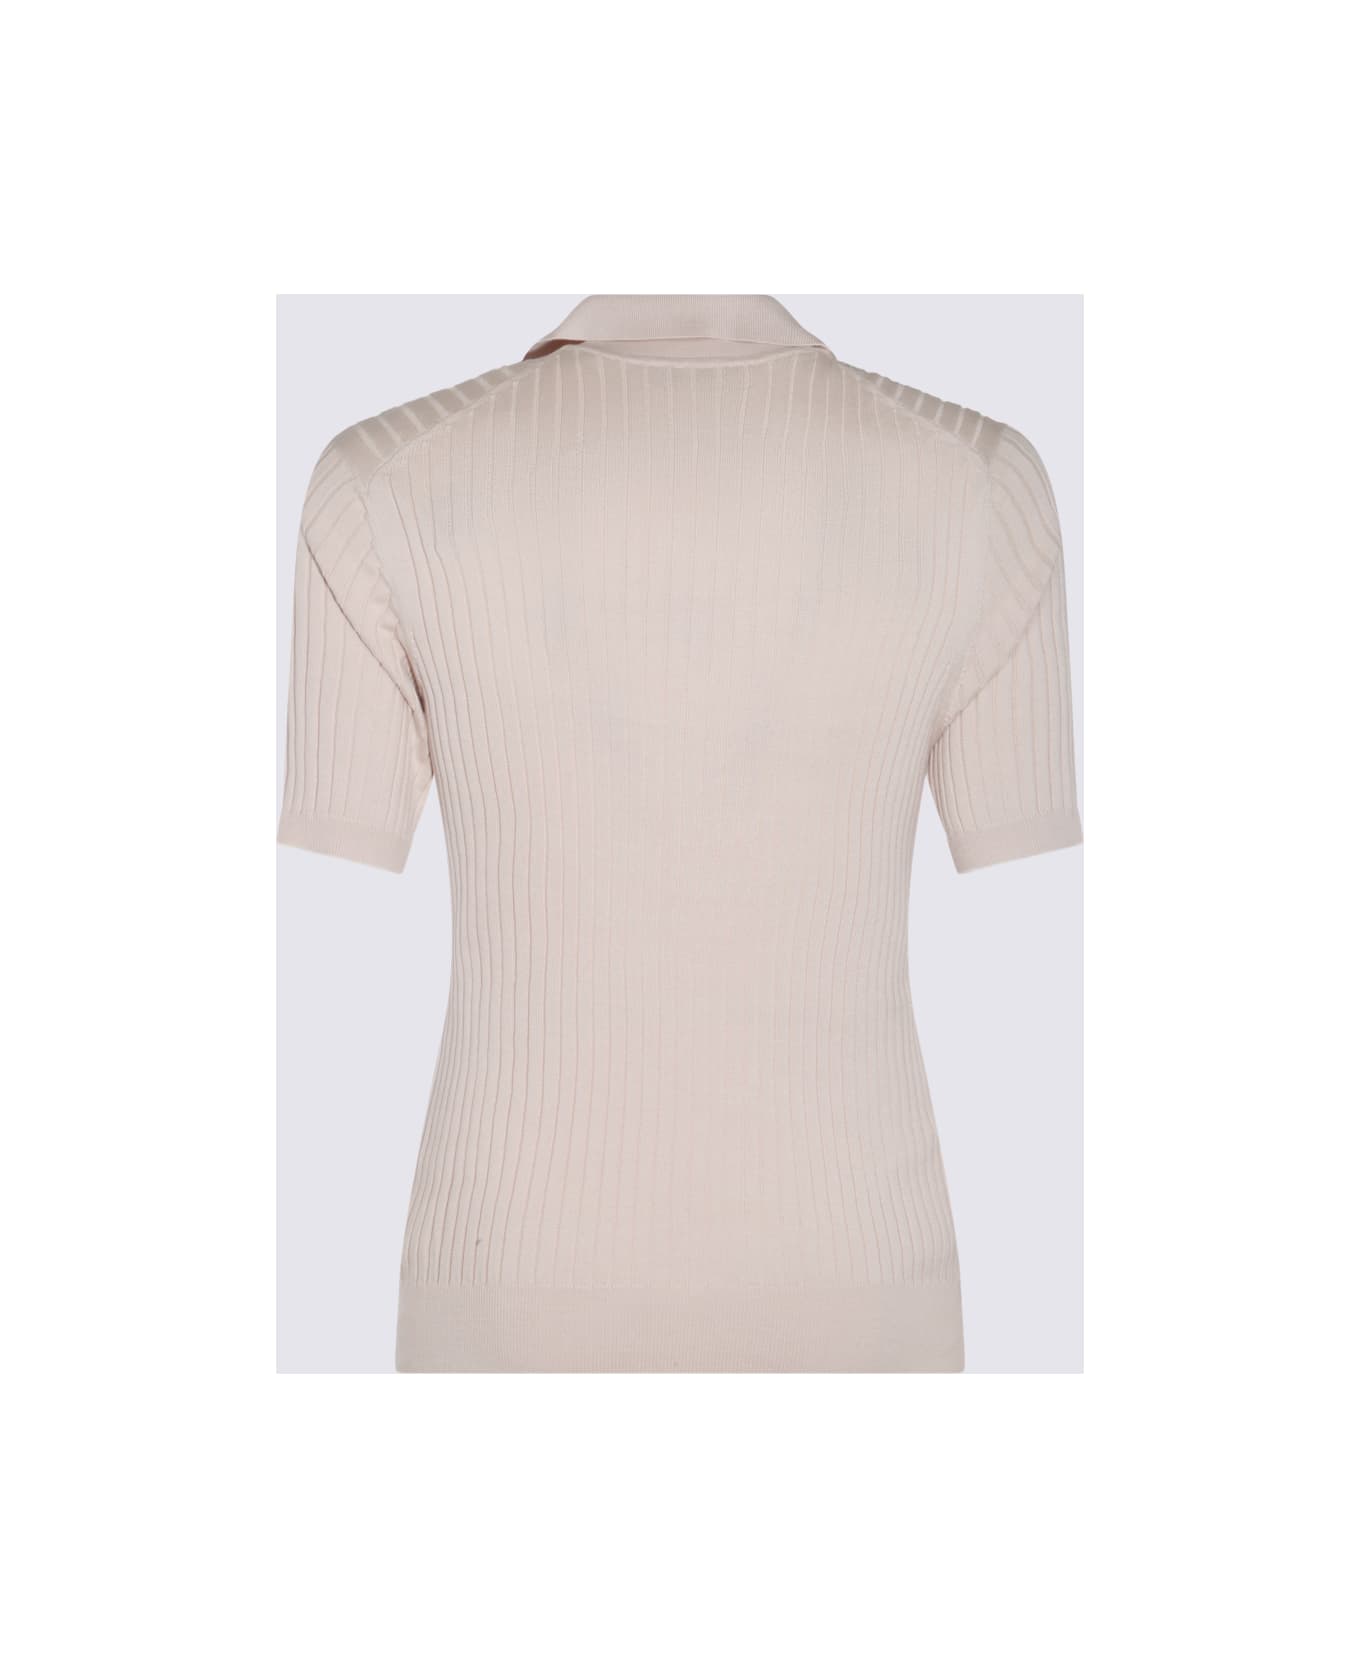 Brunello Cucinelli Light Beige Cotton Polo Shirt - Beige